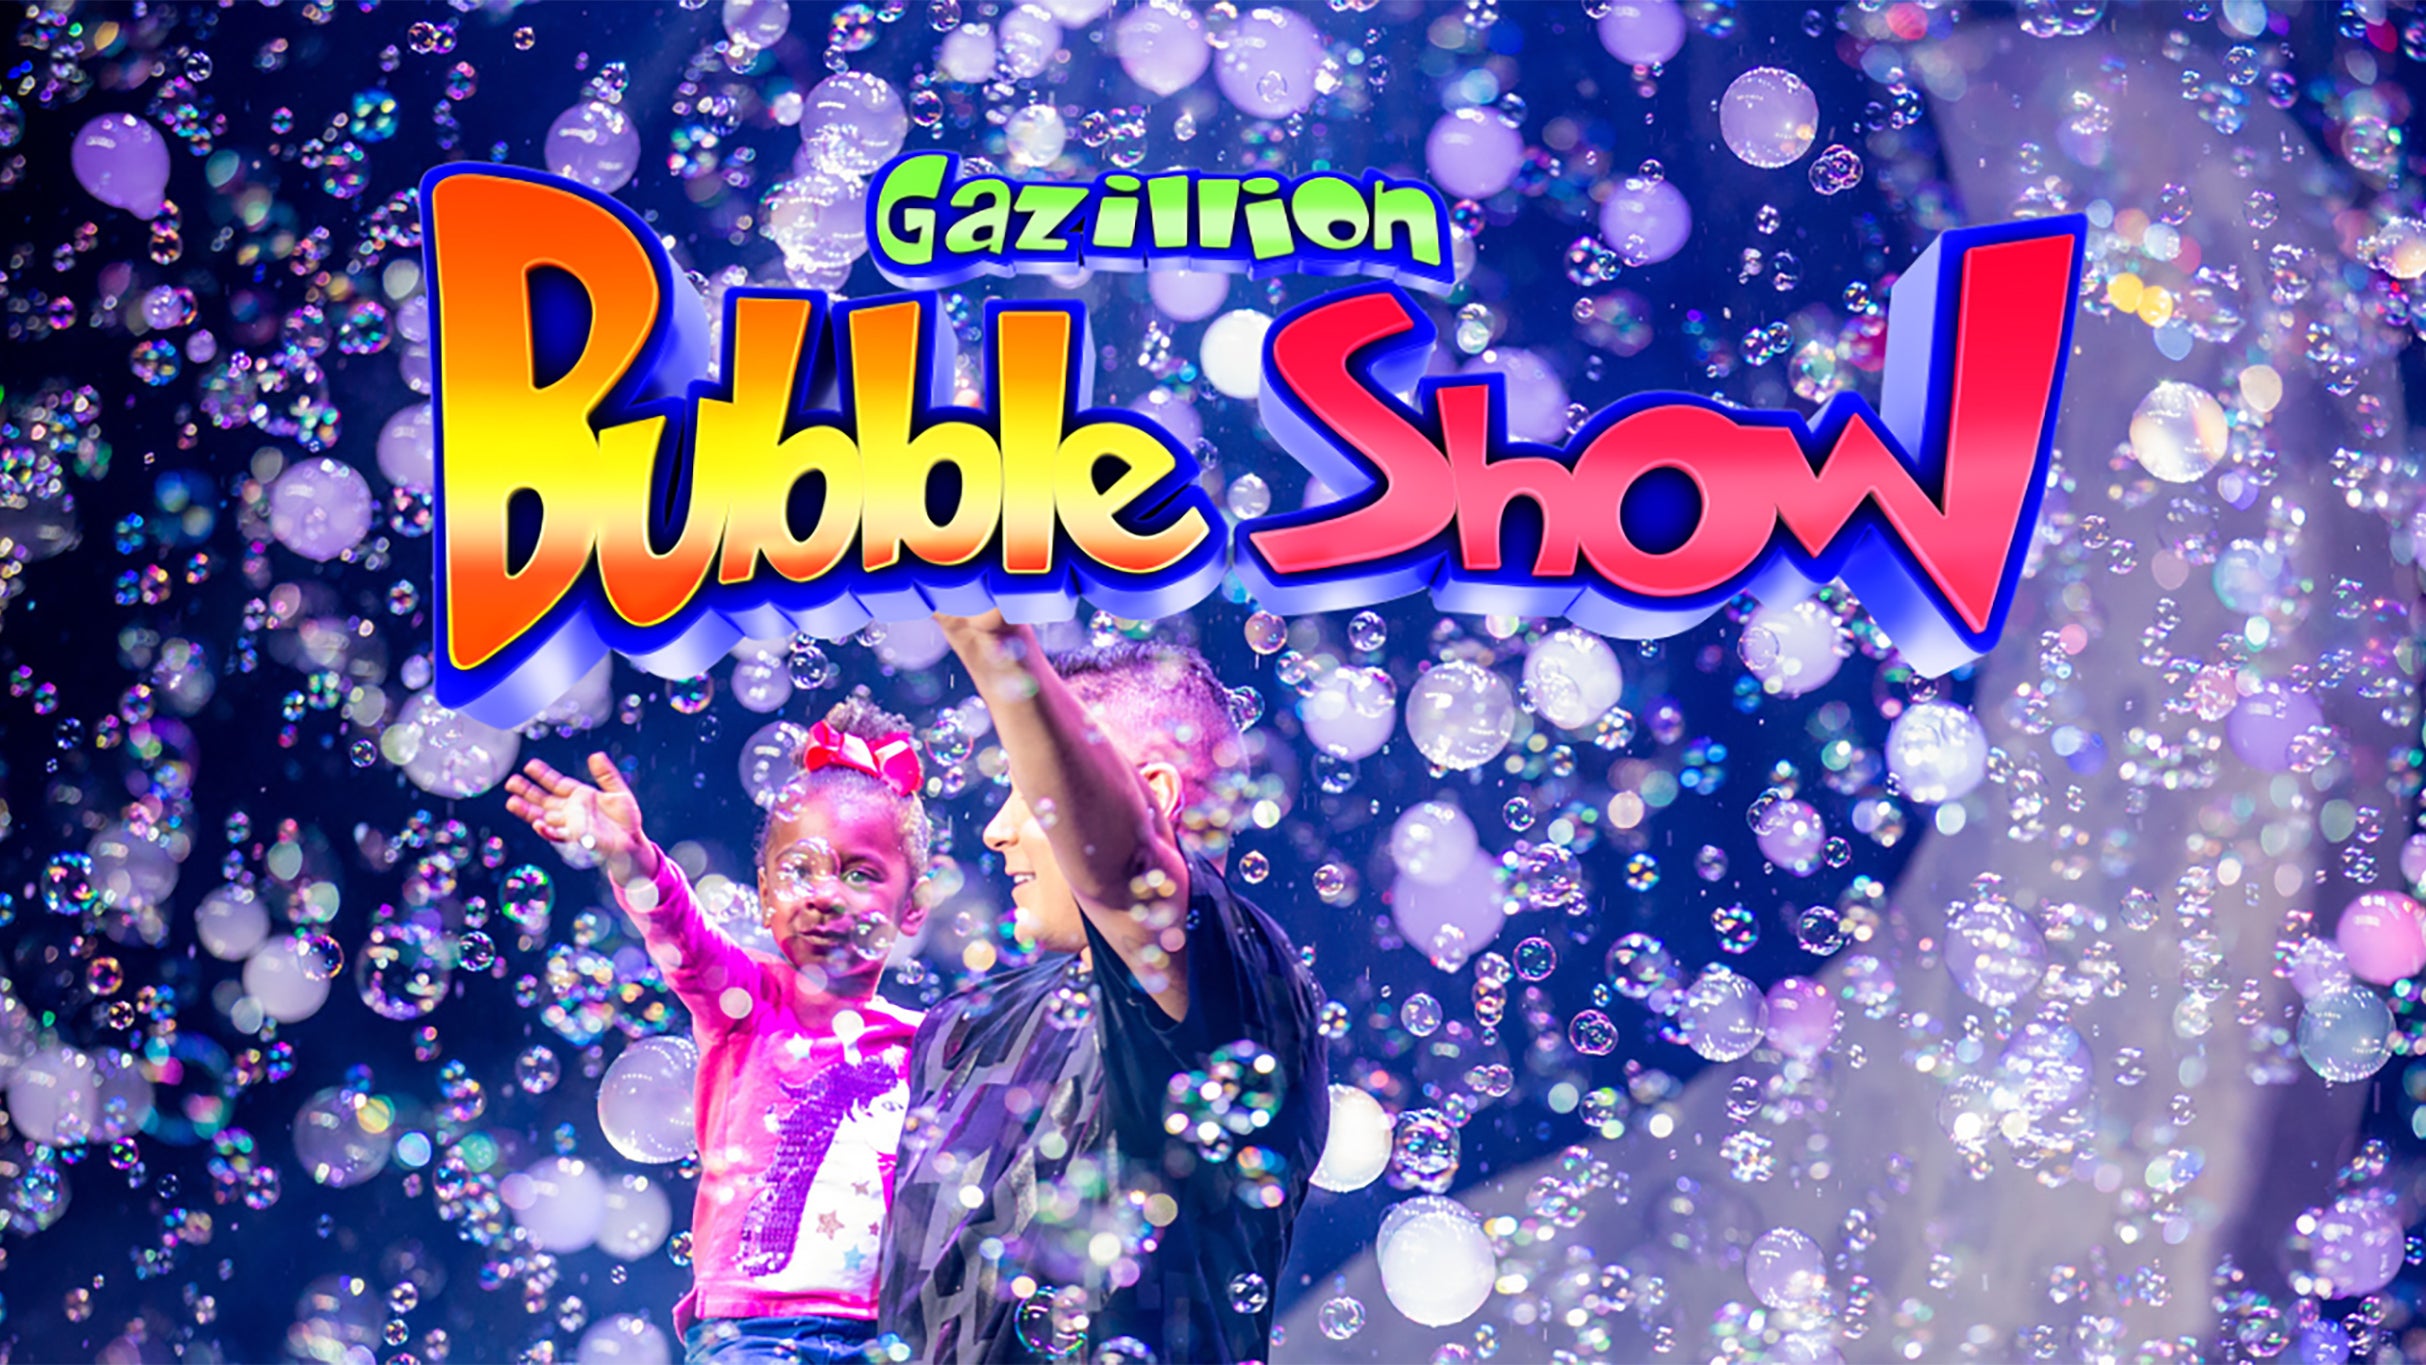 Gazillion Bubble Show presale password